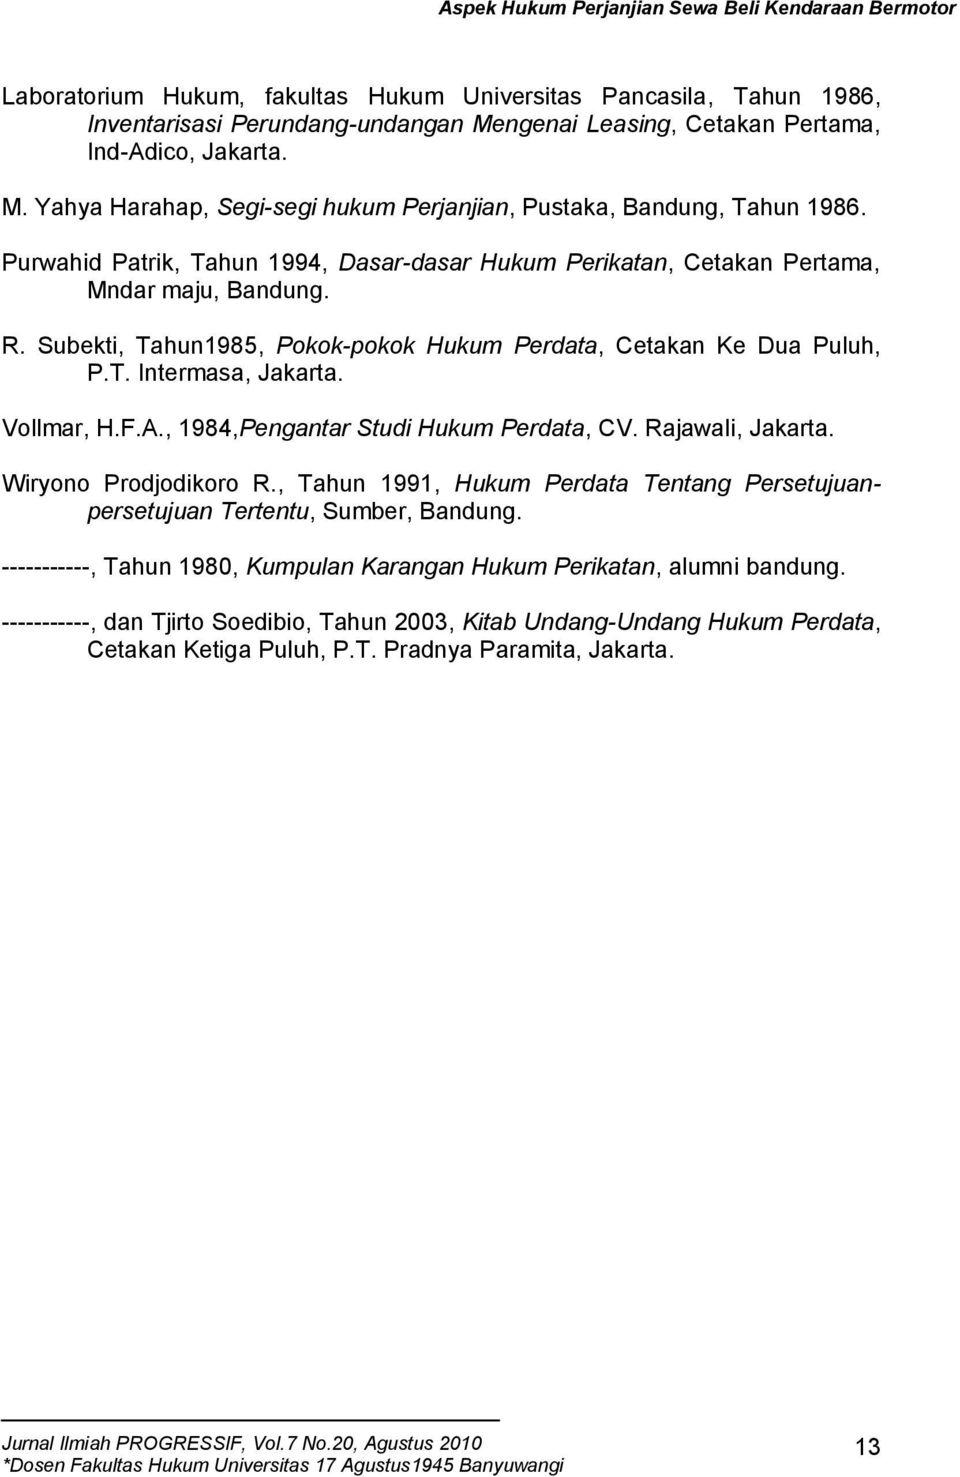 Vollmar, H.F.A., 1984,Pengantar Studi Hukum Perdata, CV. Rajawali, Jakarta. Wiryono Prodjodikoro R., Tahun 1991, Hukum Perdata Tentang Persetujuanpersetujuan Tertentu, Sumber, Bandung.